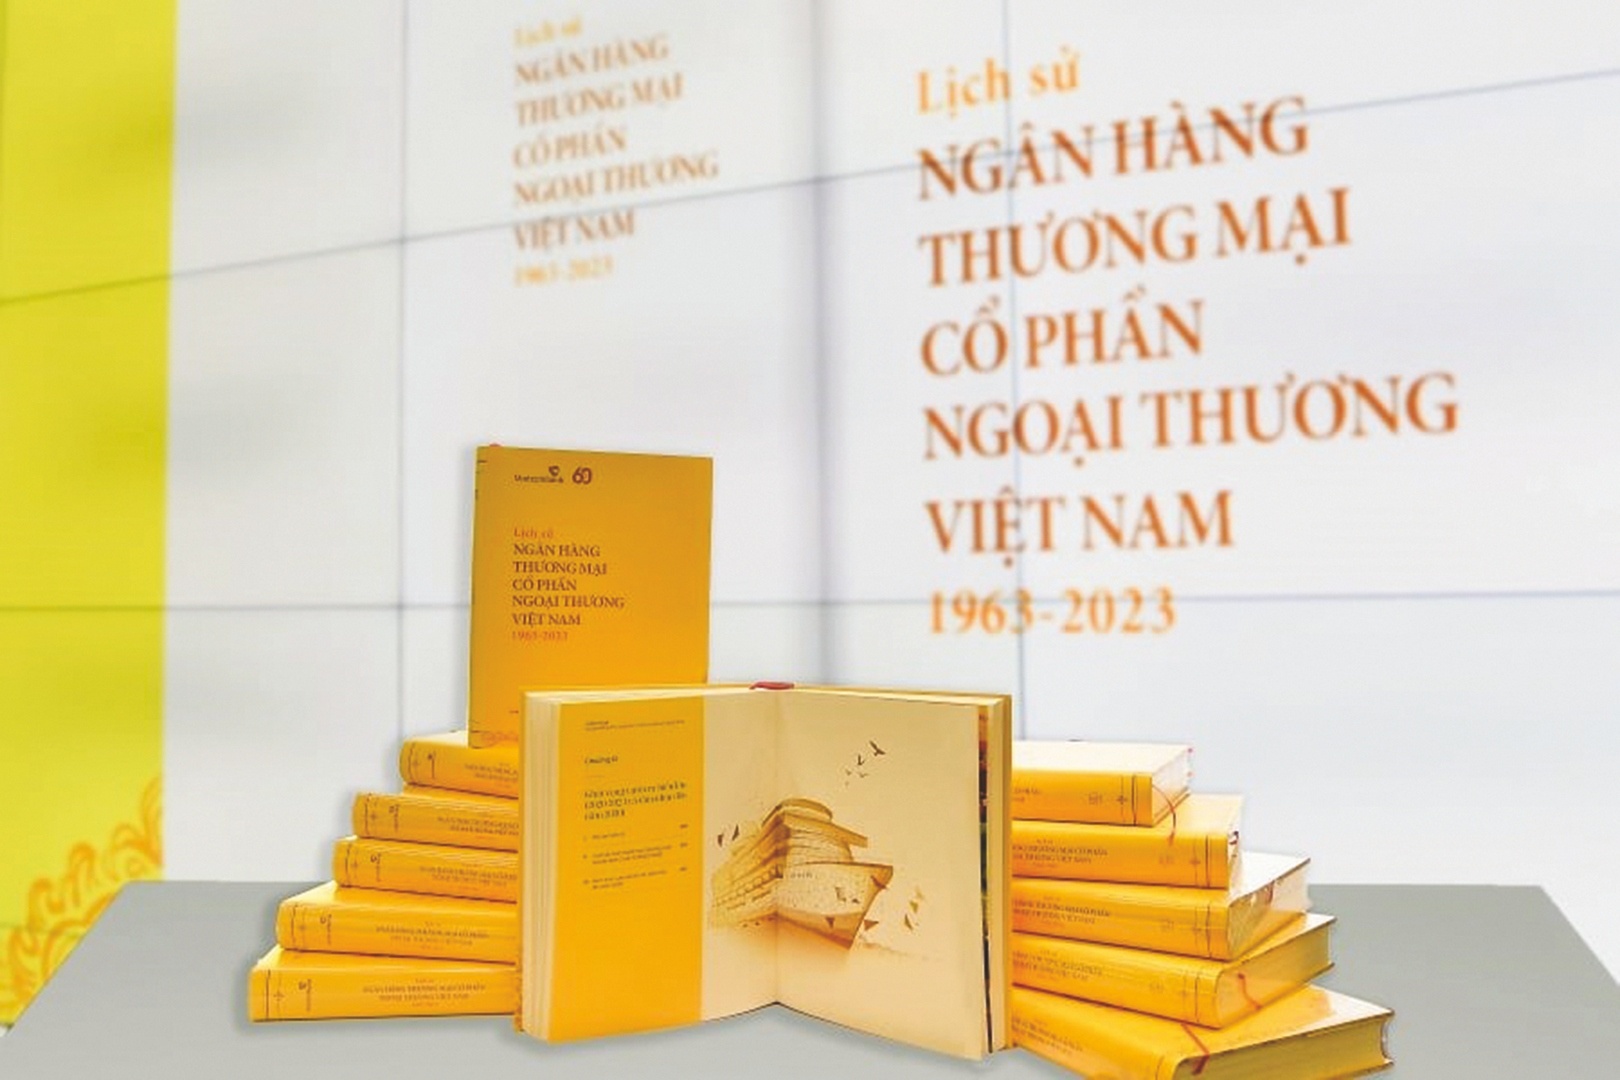 Ra mắt sách về lịch sử Vietcombank